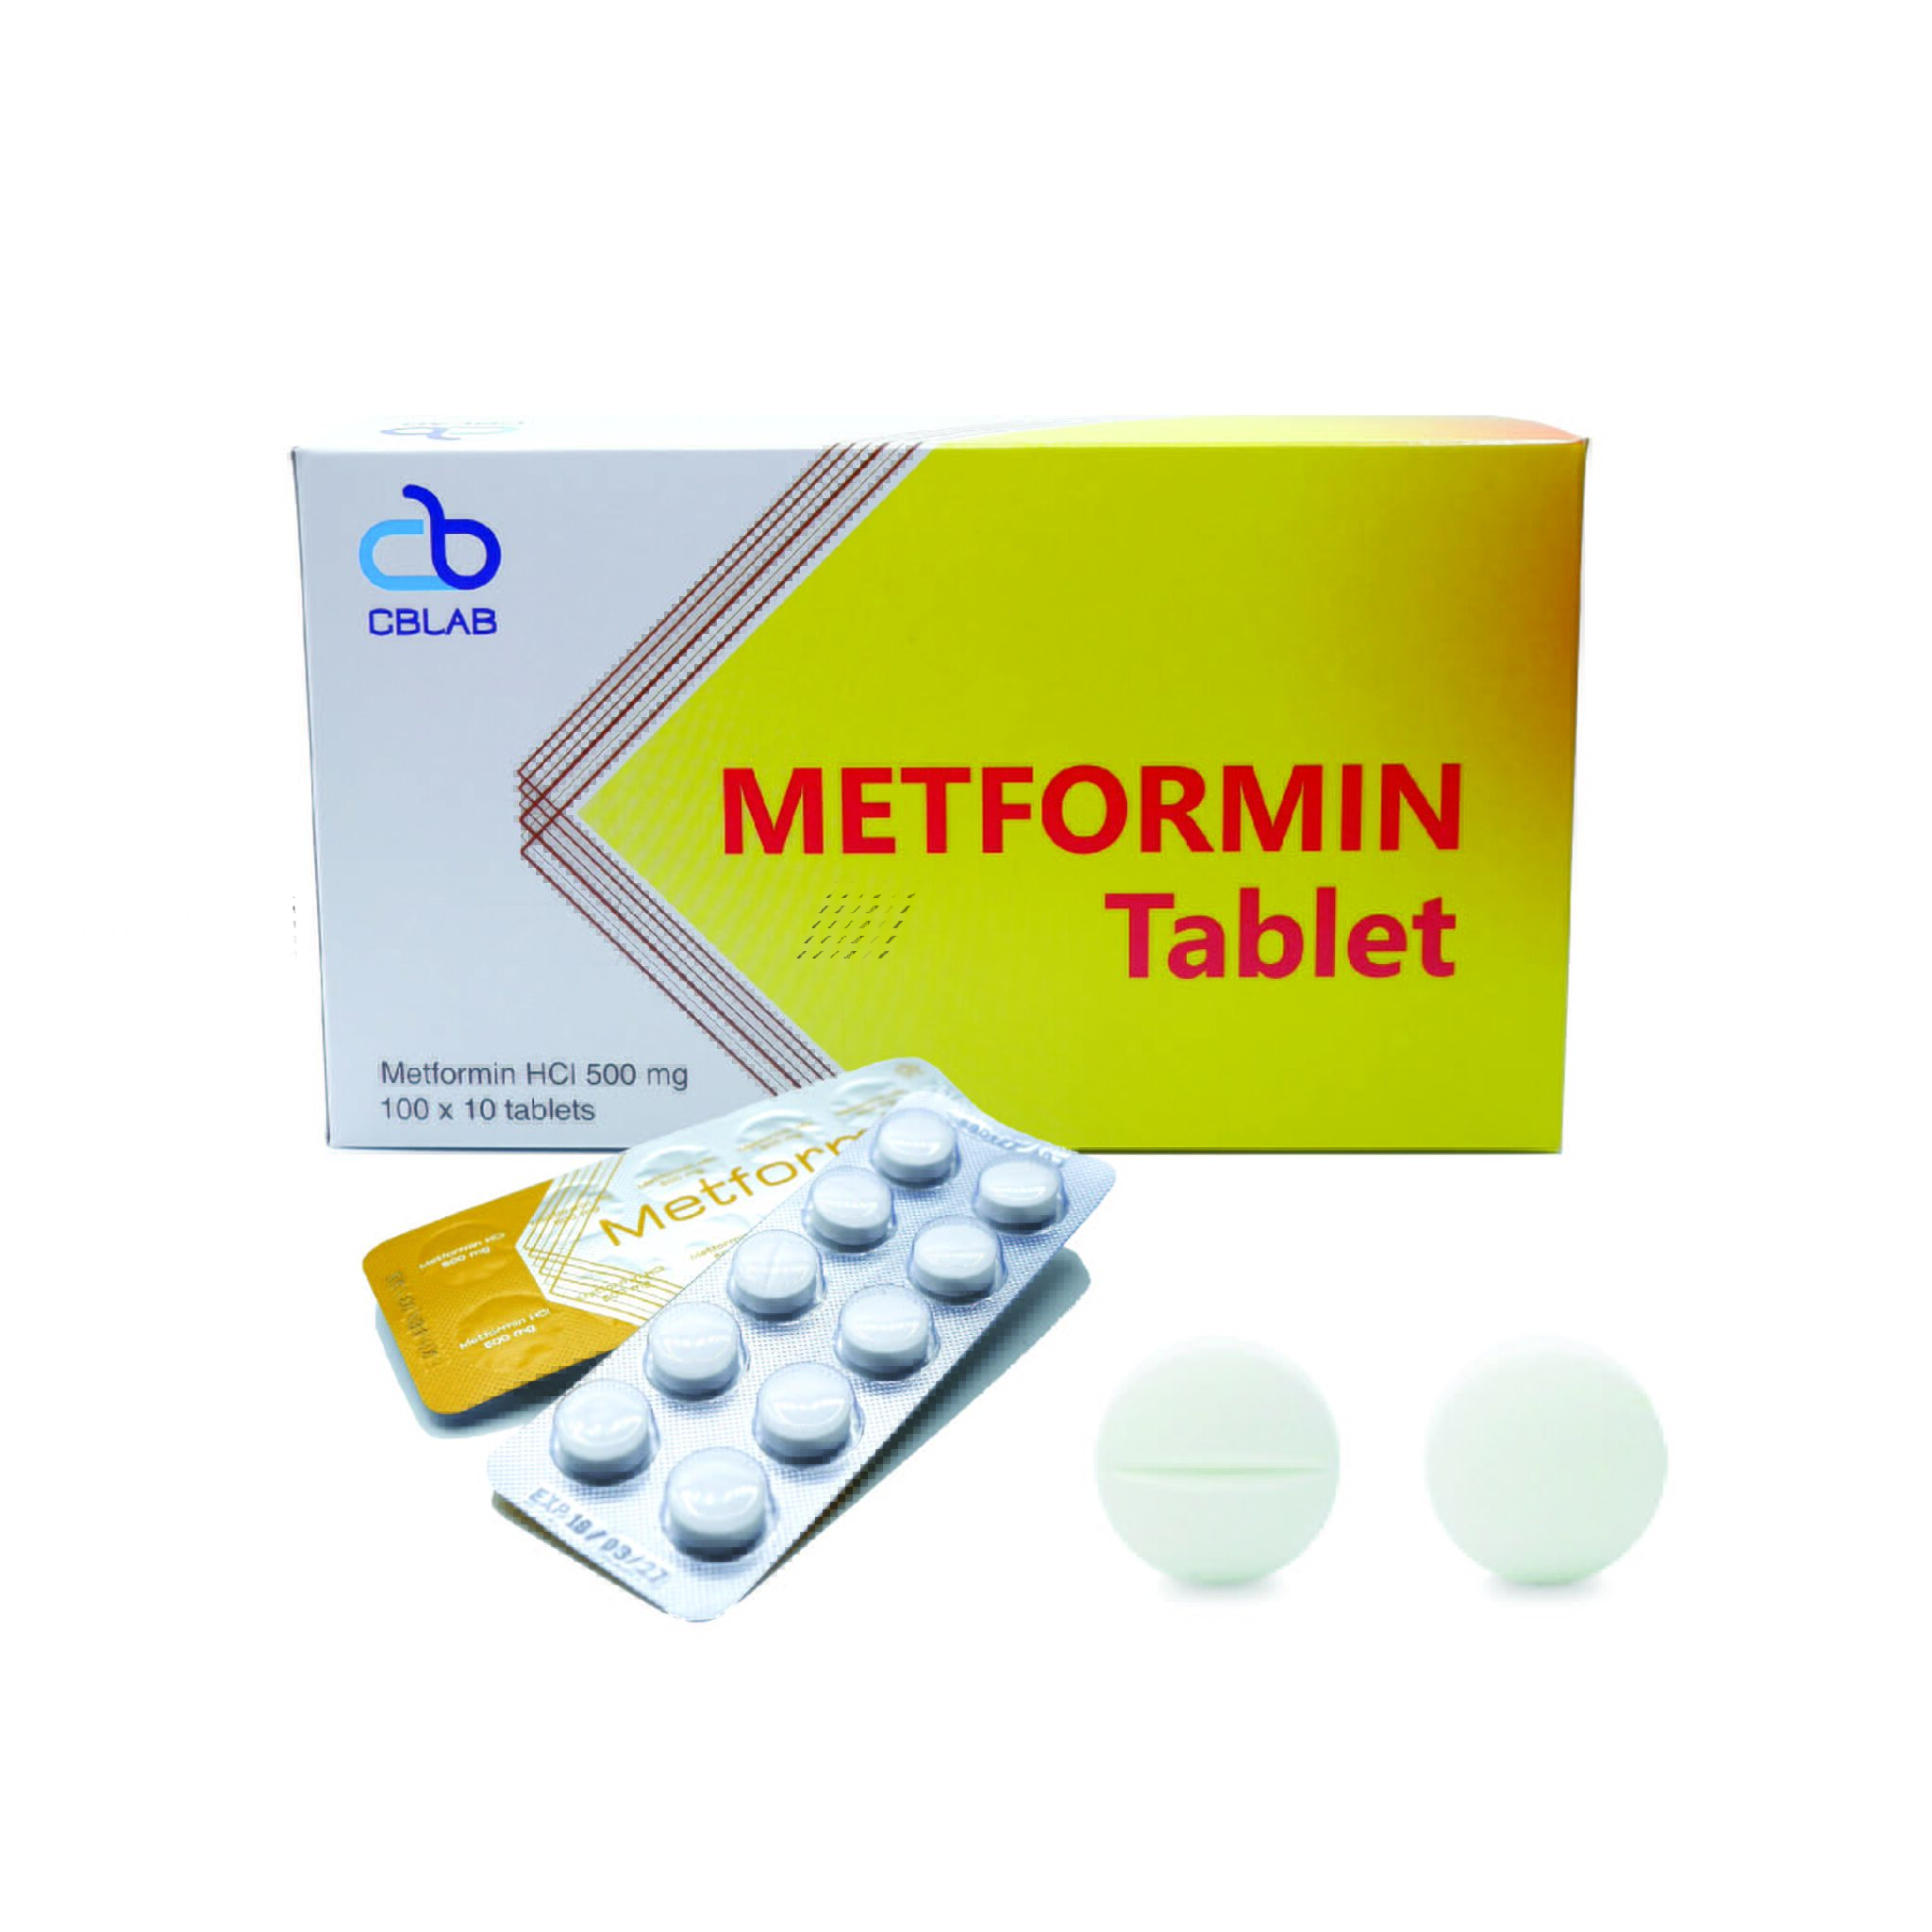 metformin-500-mg-100x10-tabs-s-charoen-bhaesaj-trading